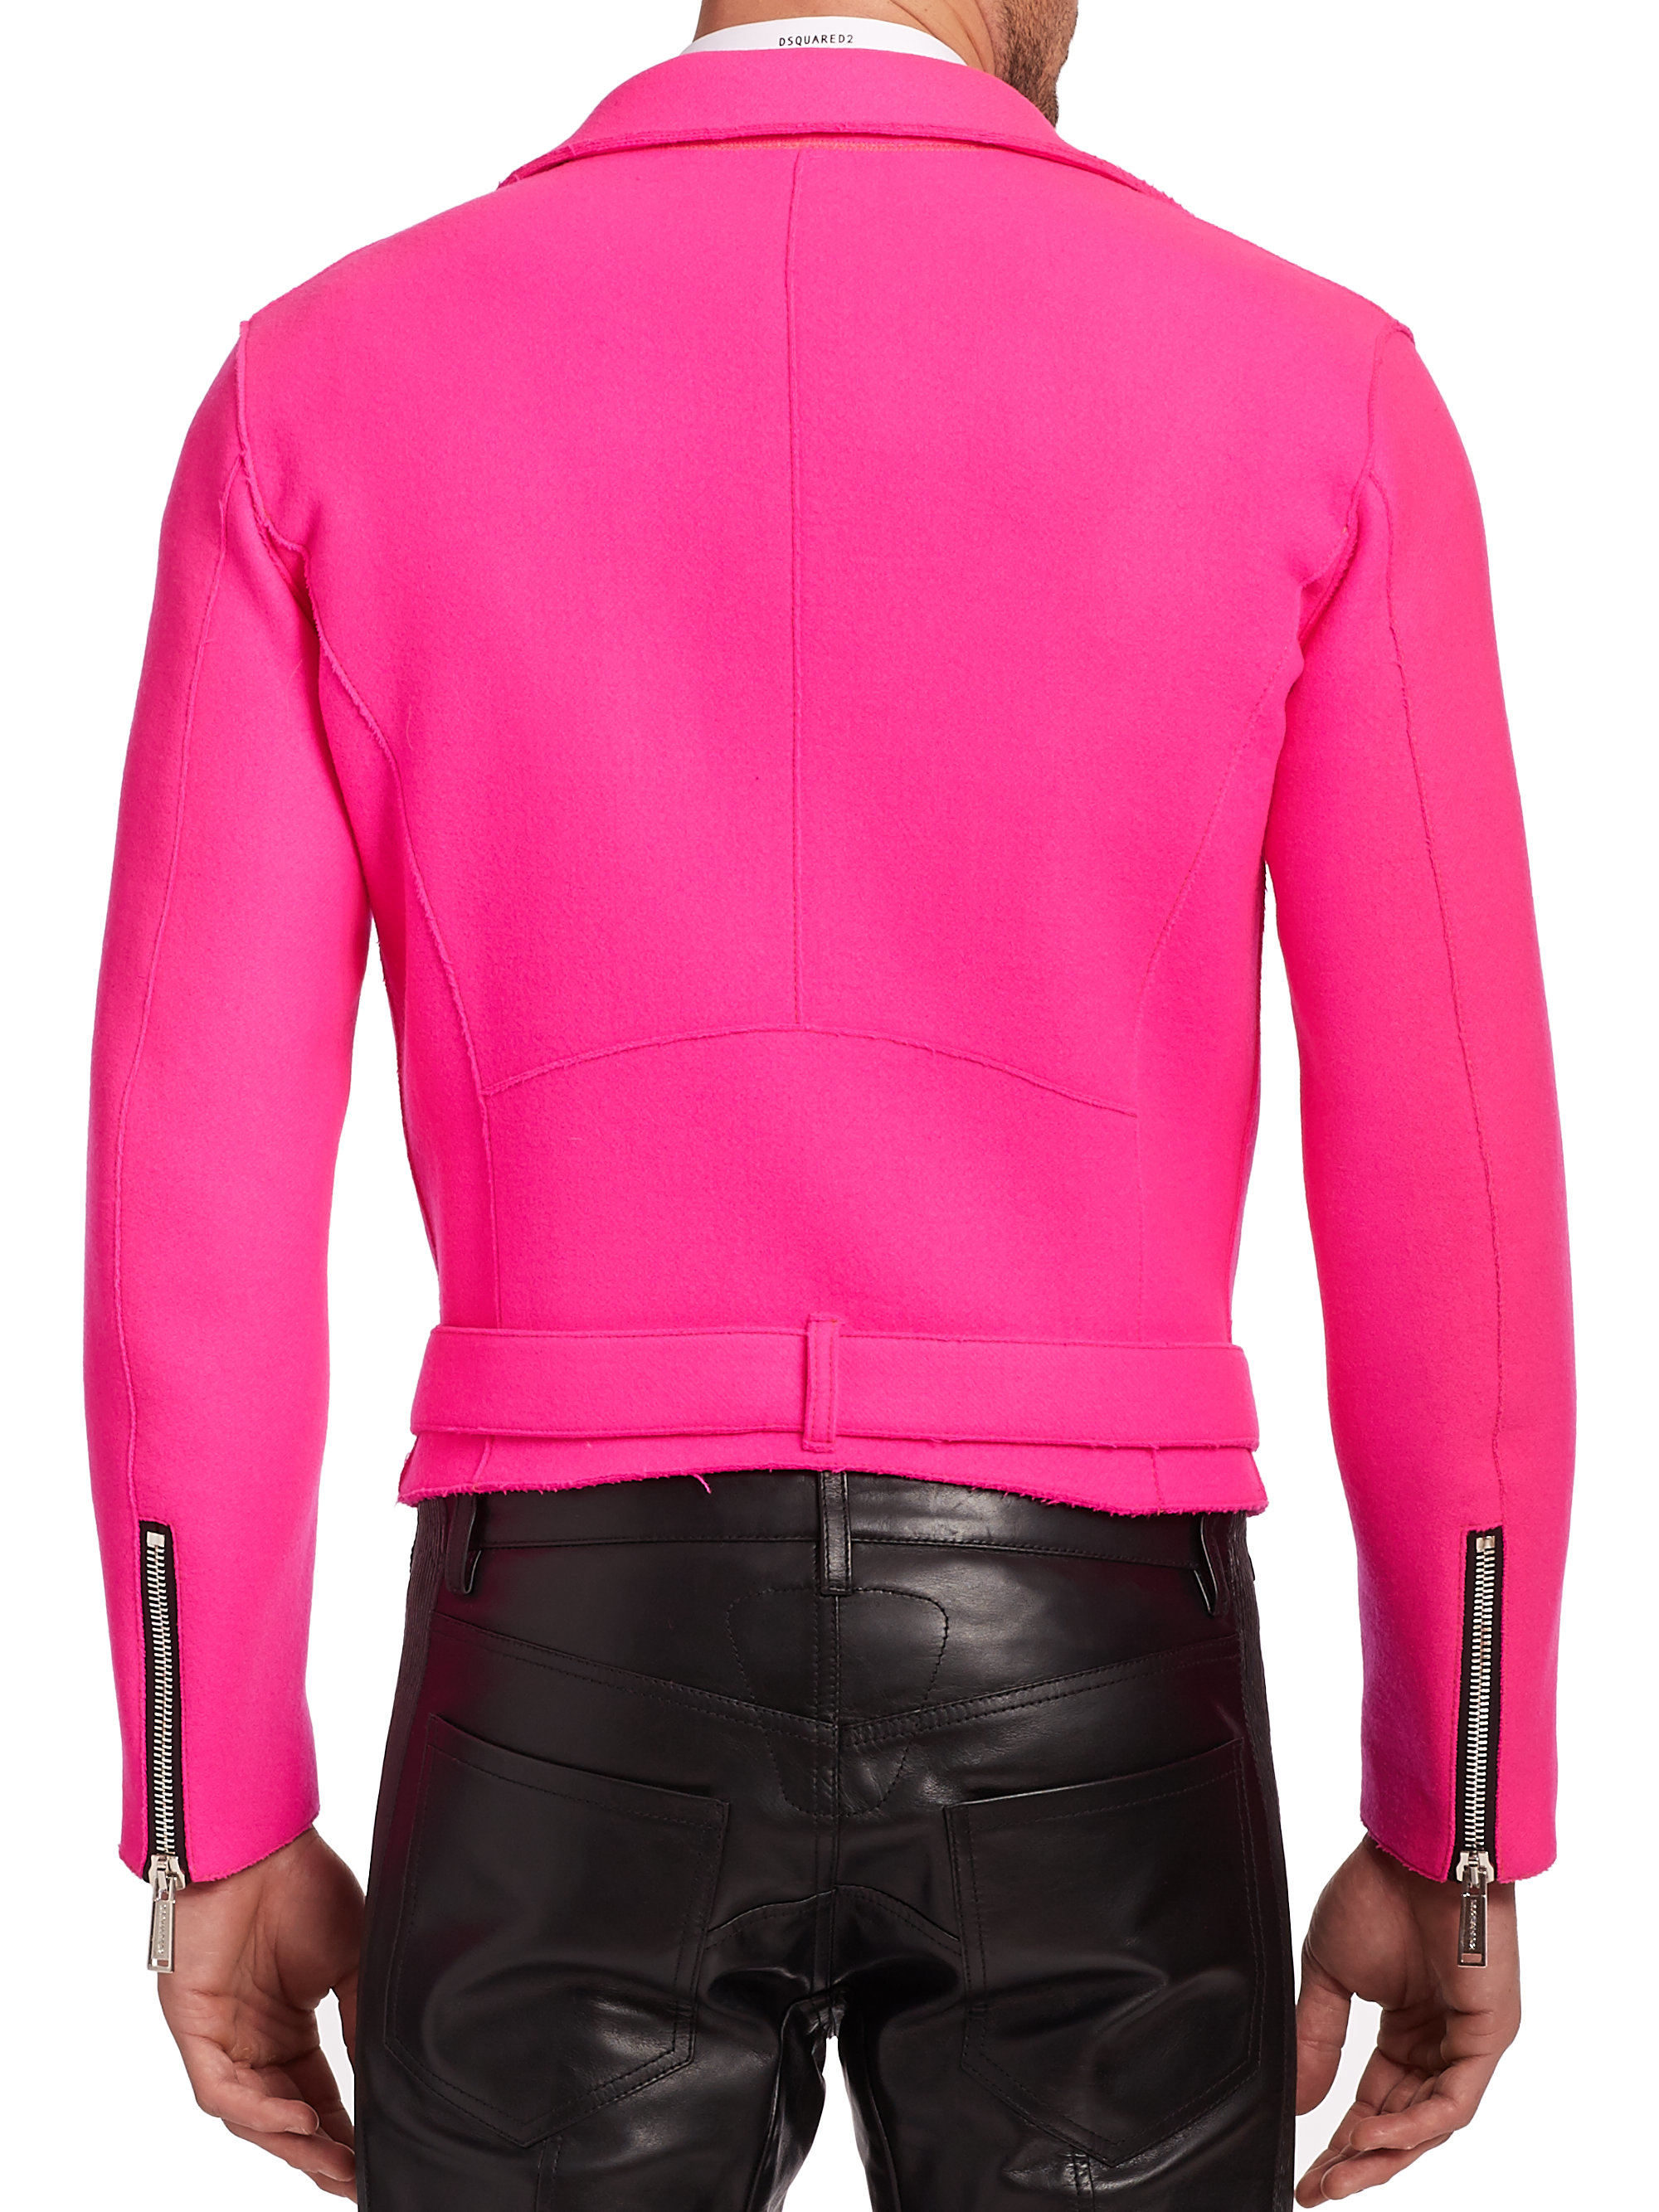 DSquared² Wool Moto Jacket in Fuschia (Pink) for Men - Lyst